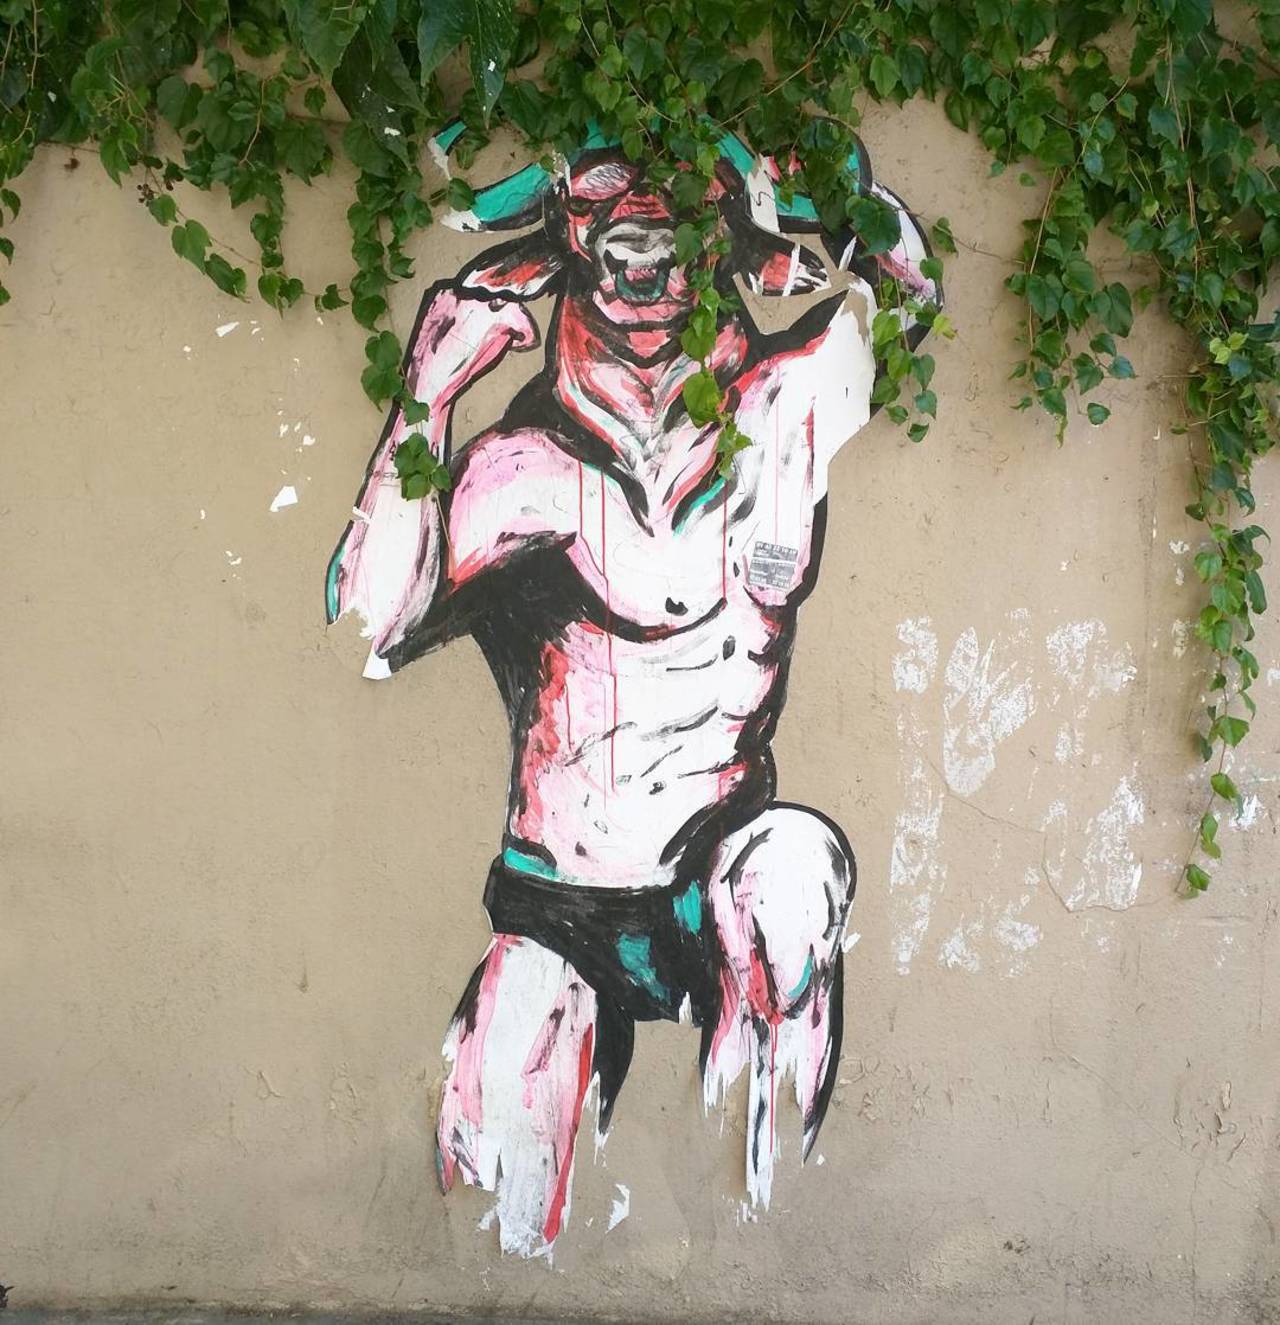 http://ift.tt/1KiqpQt #Paris #graffiti photo by alphaquadra http://ift.tt/1LeM0HJ #StreetArt http://t.co/lBEUpxVPyy